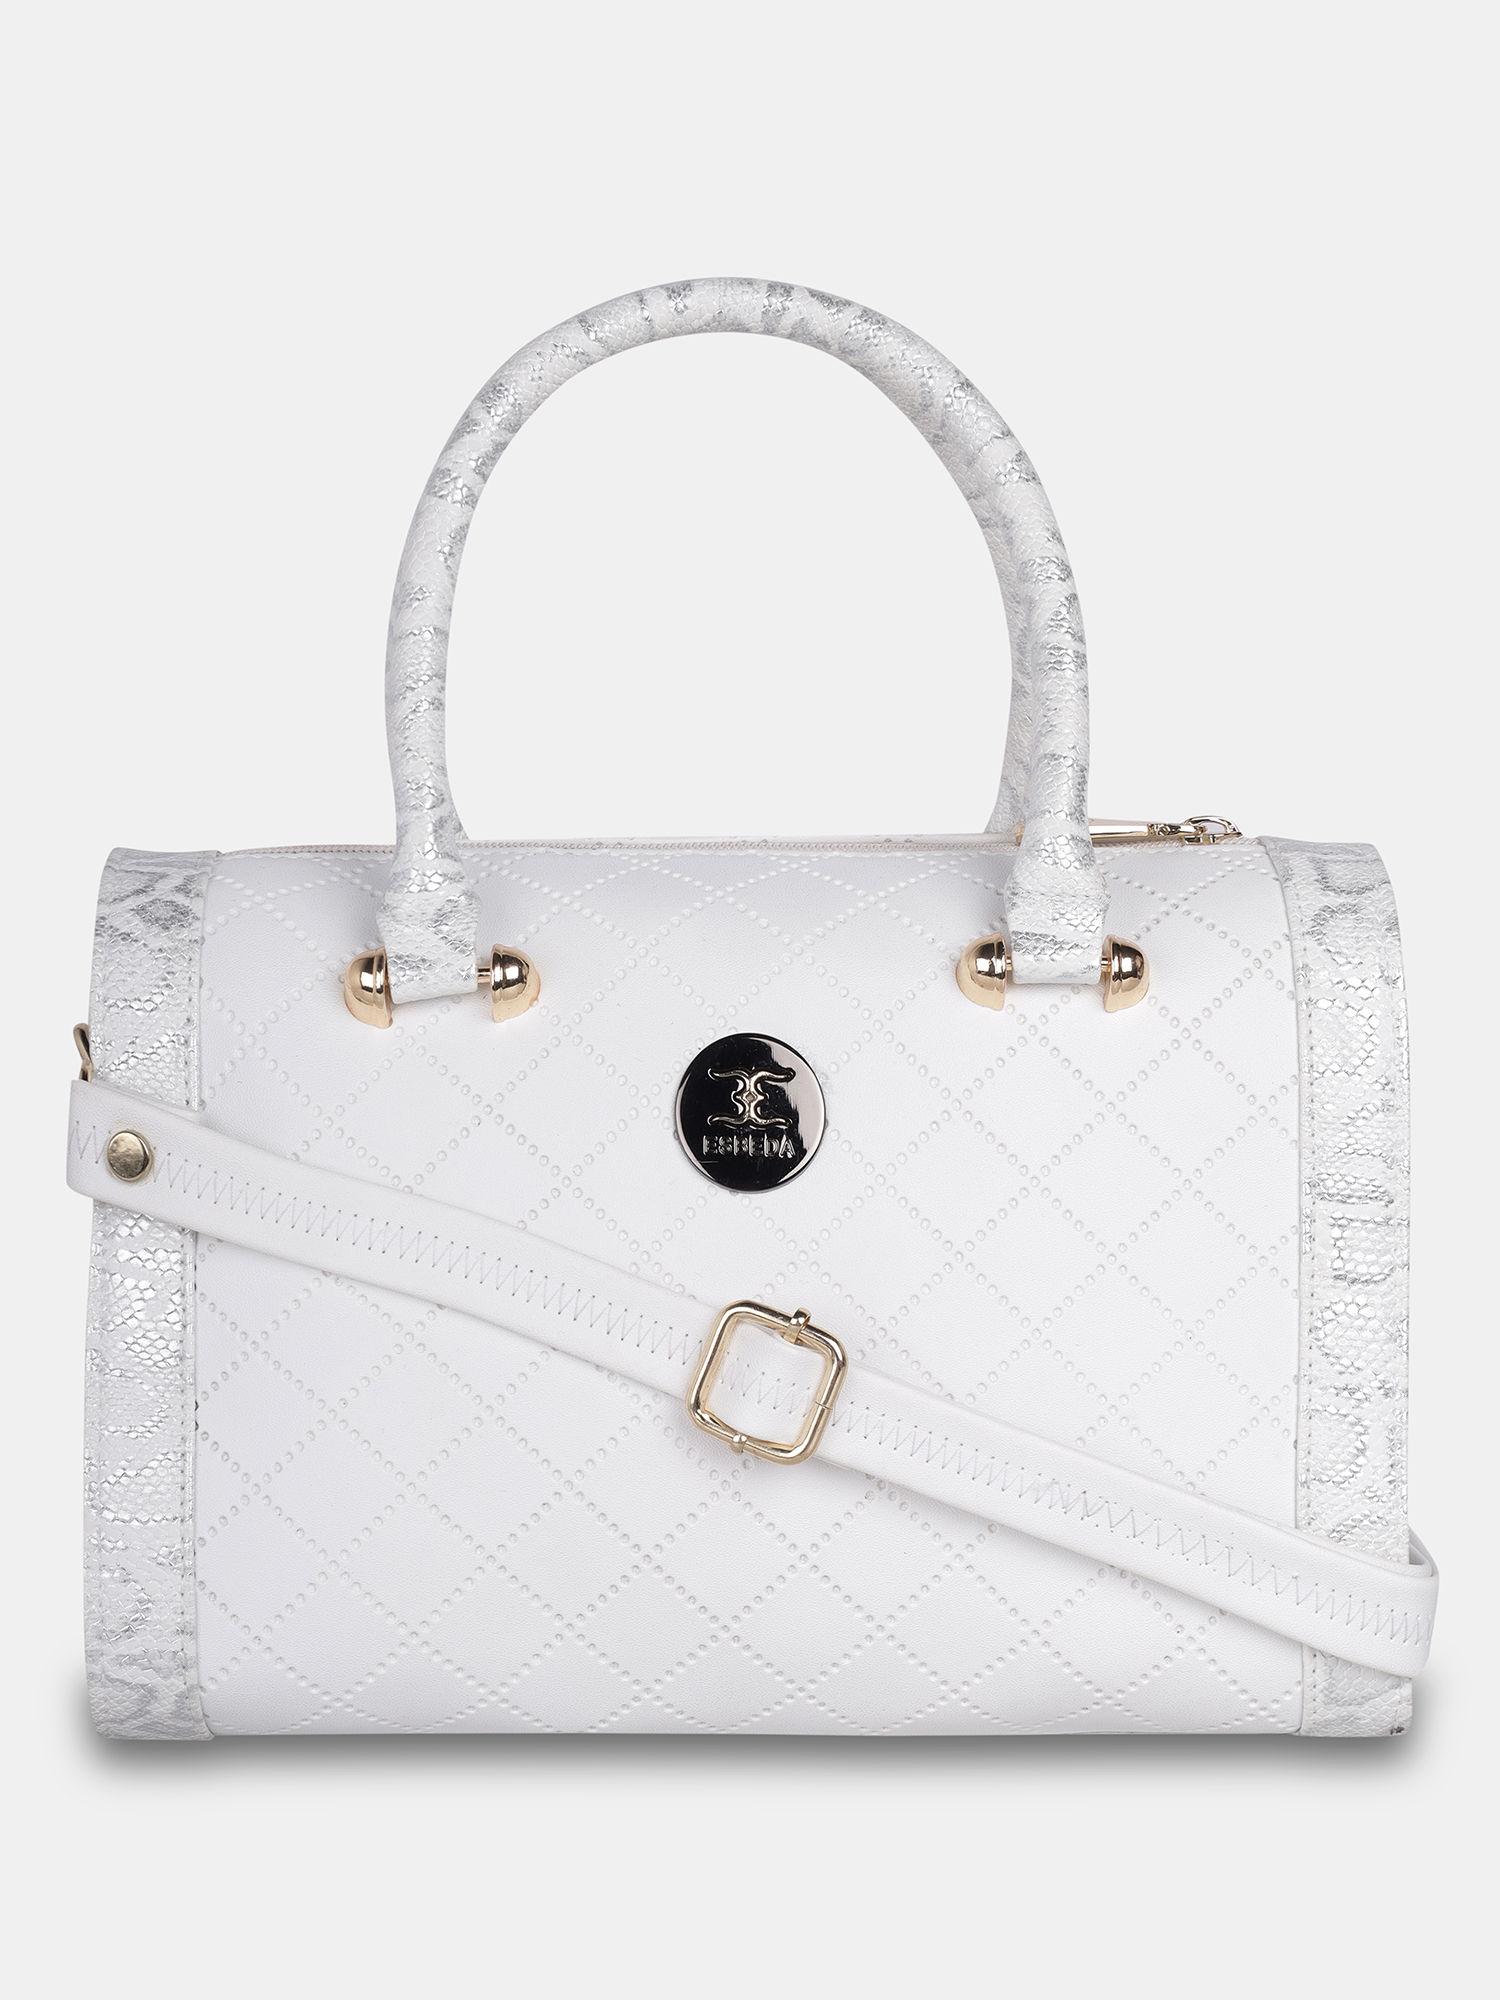 white glitter top handle handbag for women (m)